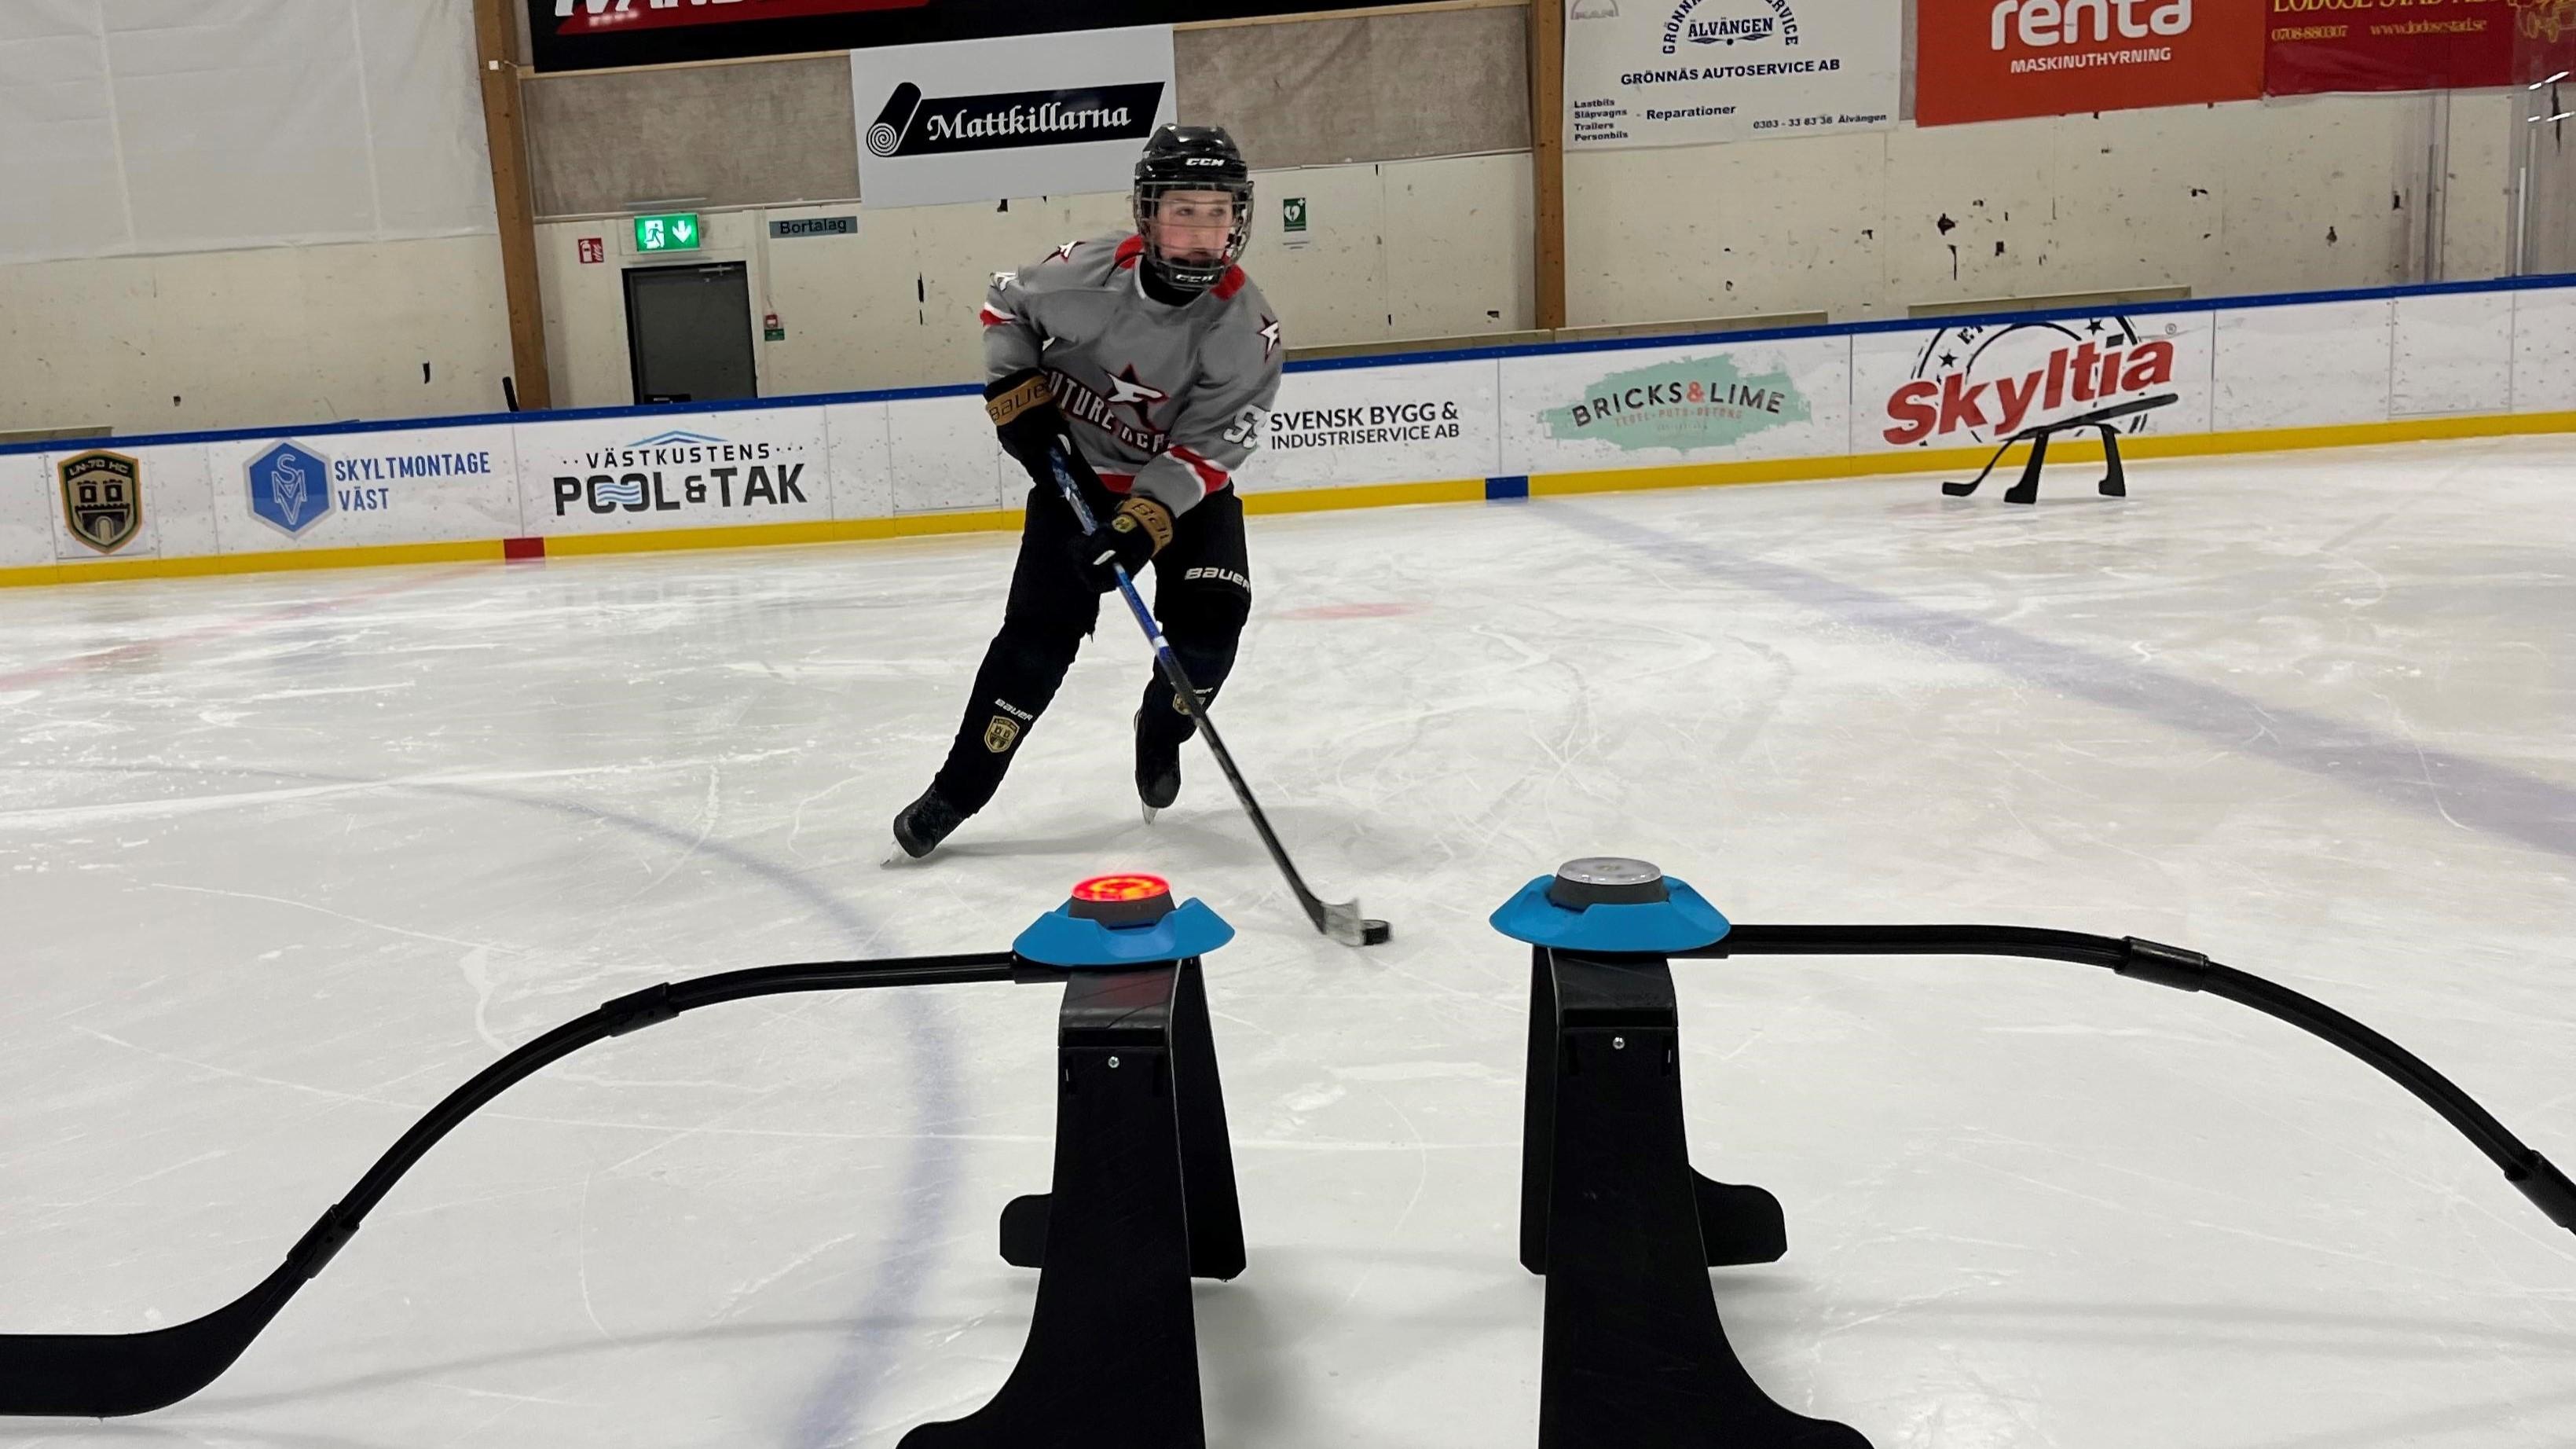 Med blinkande lampor tränar hockeyspelarna på att uppfatta förändringar och anpassa sitt spel, samtidigt som de genomför praktiska övningar. Foto: Futureacademy.nu